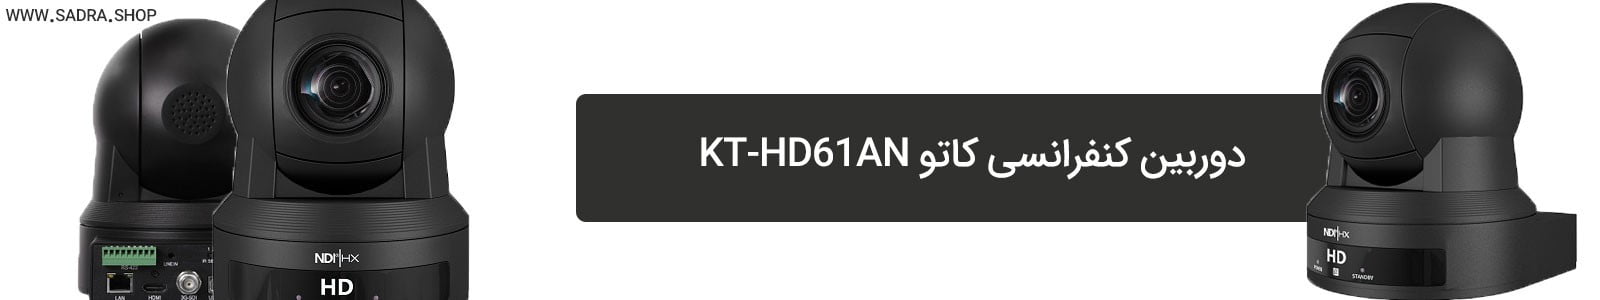 KT-HD61AN